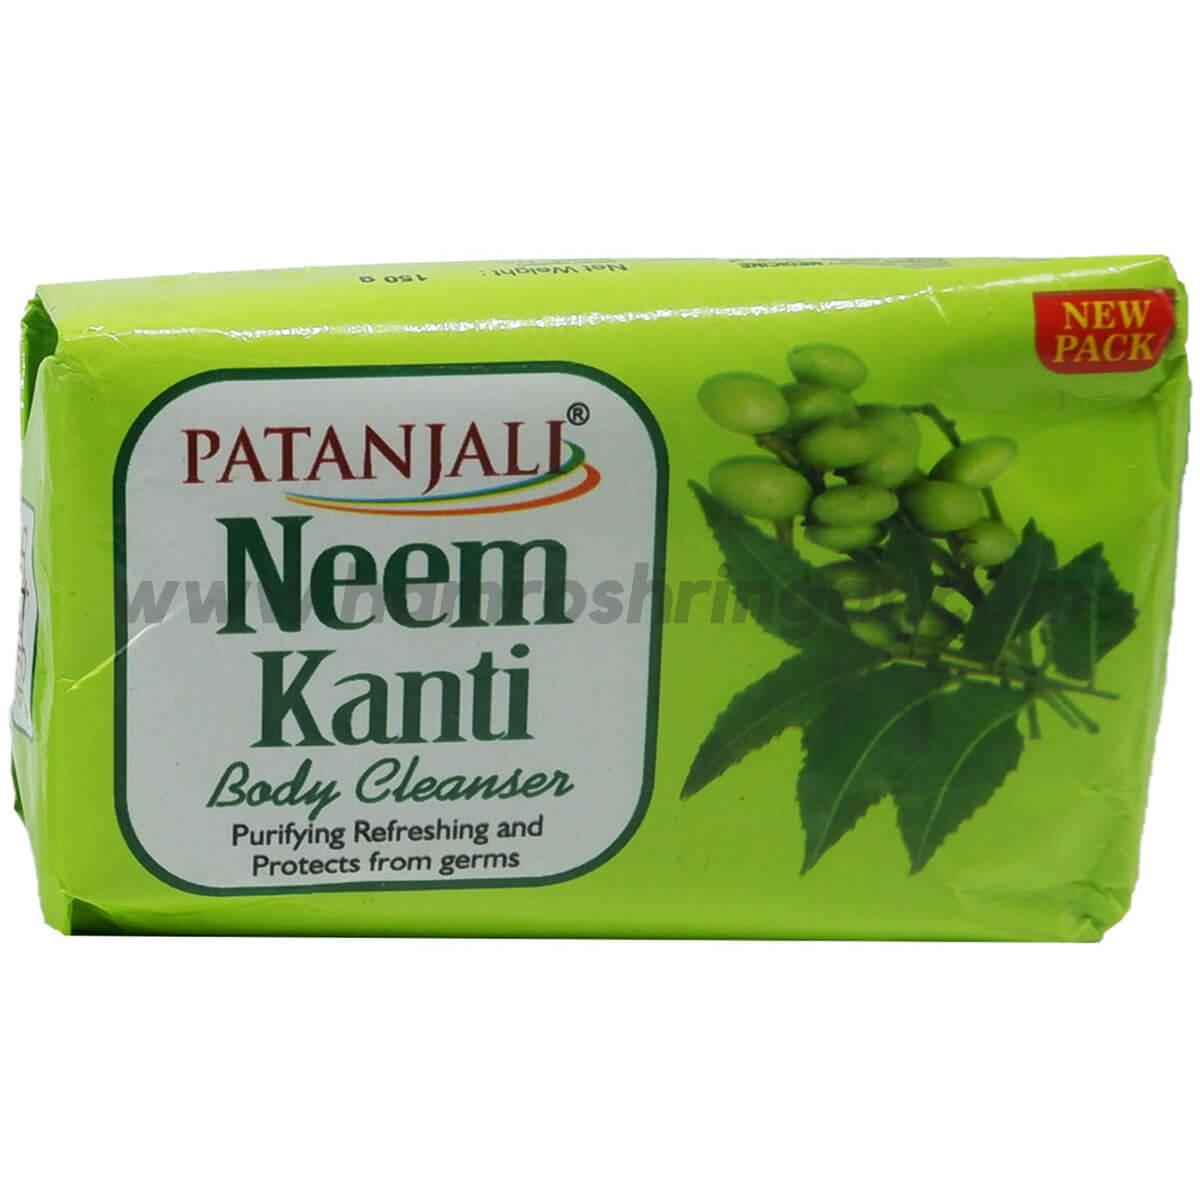 Patanjali Kanti Neem Body Cleanser Soap - 150 g - Online Shopping in Nepal  | Shringar Store | Shringar Shop | Cosmetics Store | Cosmetics Shop |  Online Store in Nepal